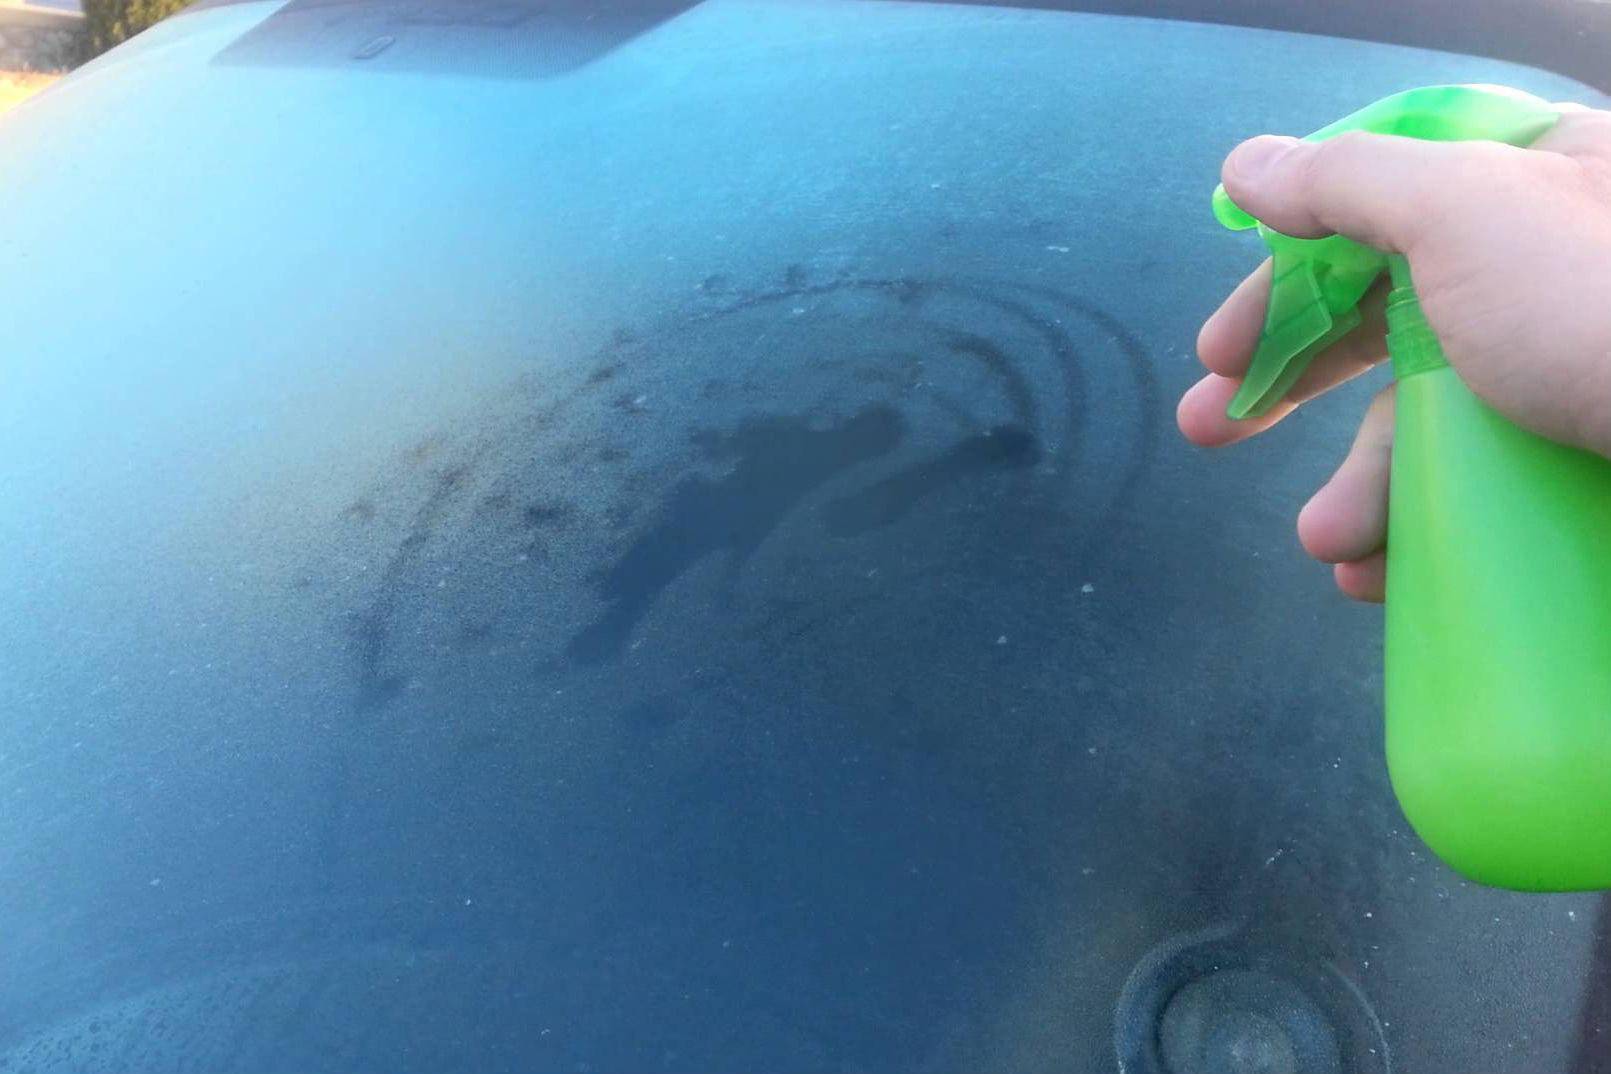 Примерзают стекла в авто, что сделать чтобы не замерзали окна в машине?